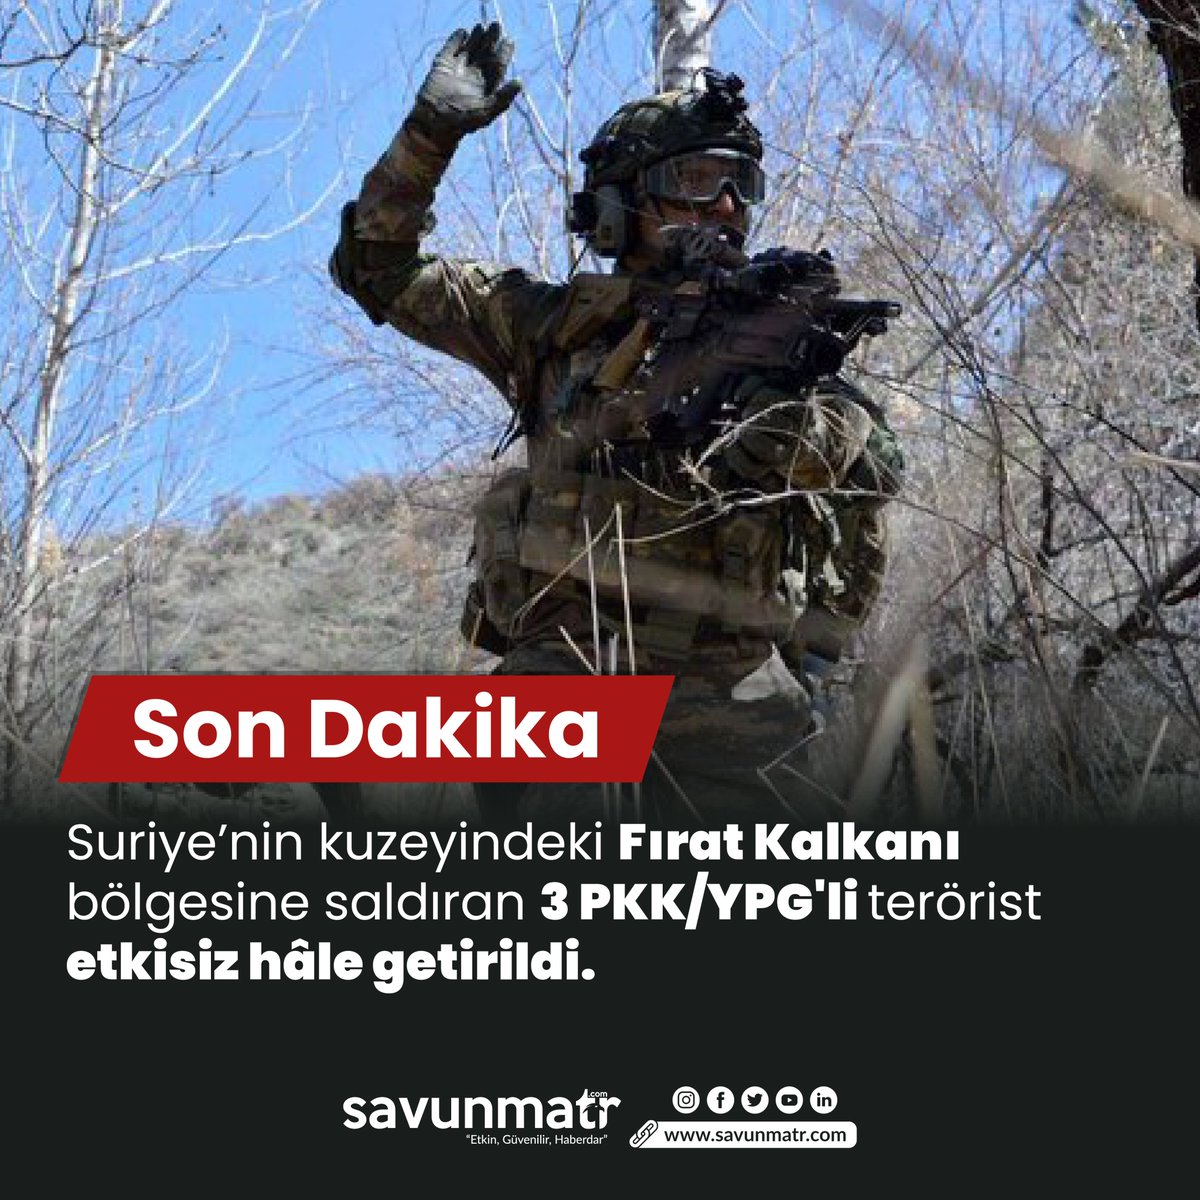 🇹🇷MSB; Suriye’nin kuzeyindeki Fırat Kalkanı bölgesine saldıran 3 PKK/YPG'li teröristin etkisiz hâle getirildiğini duyurdu.